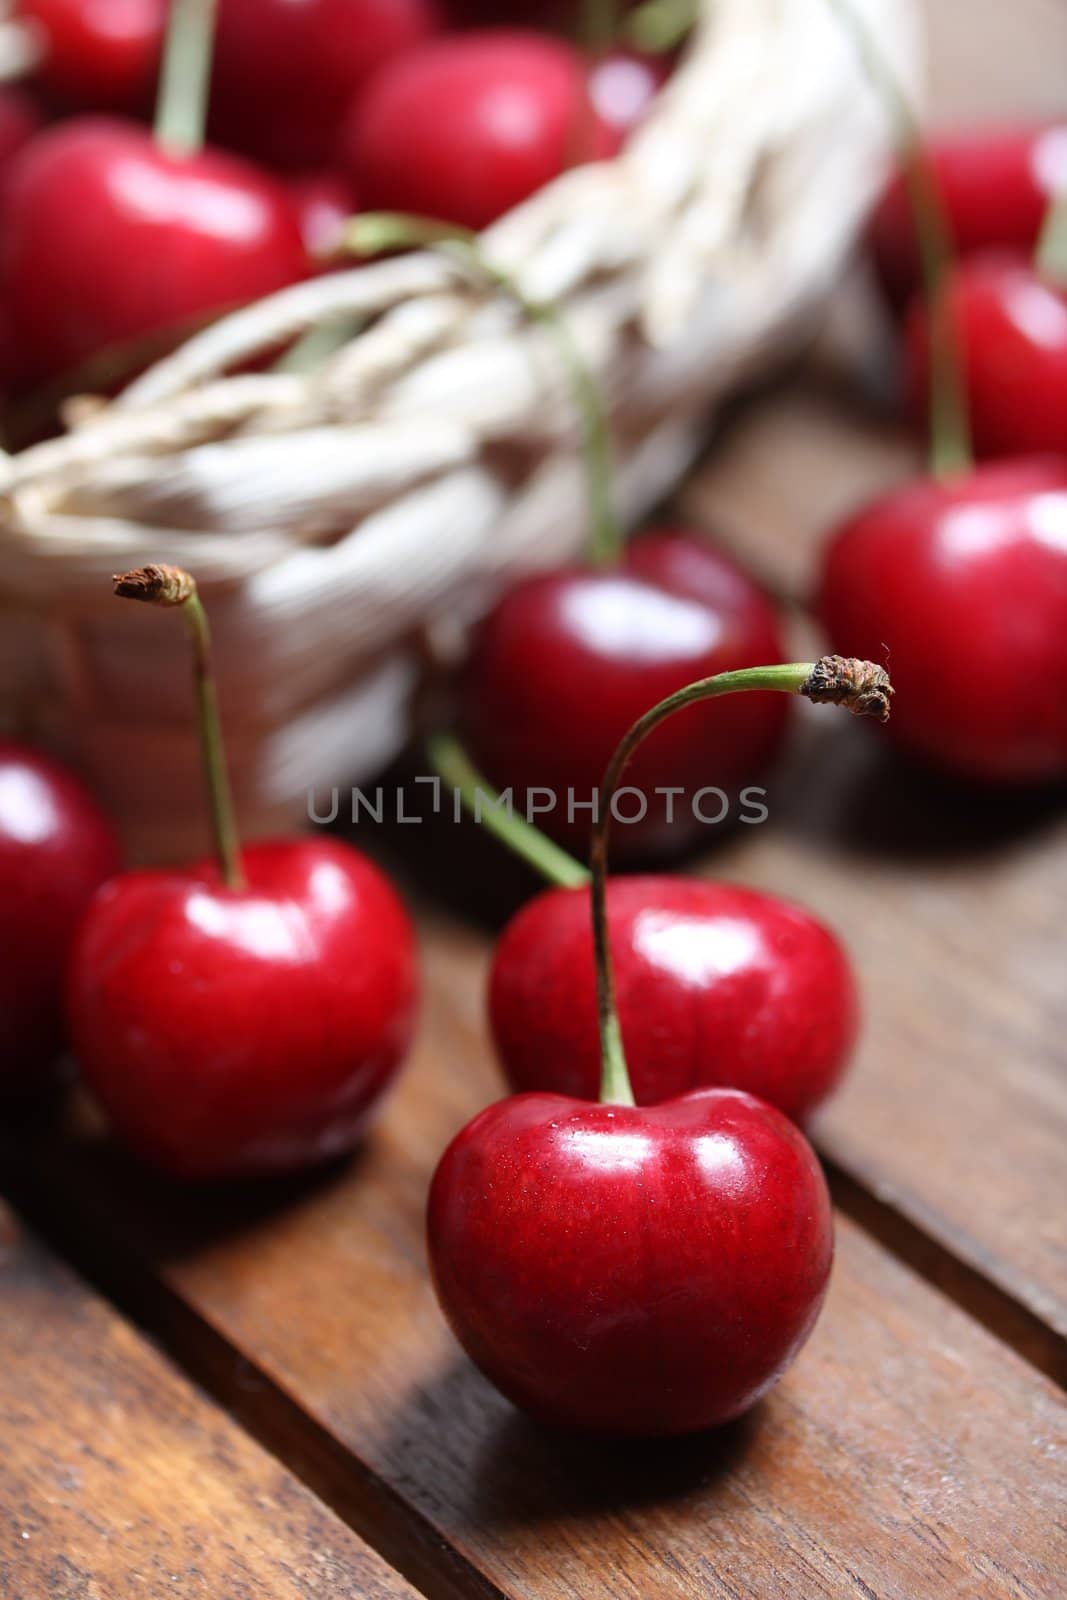 cherries in a bag by Teka77